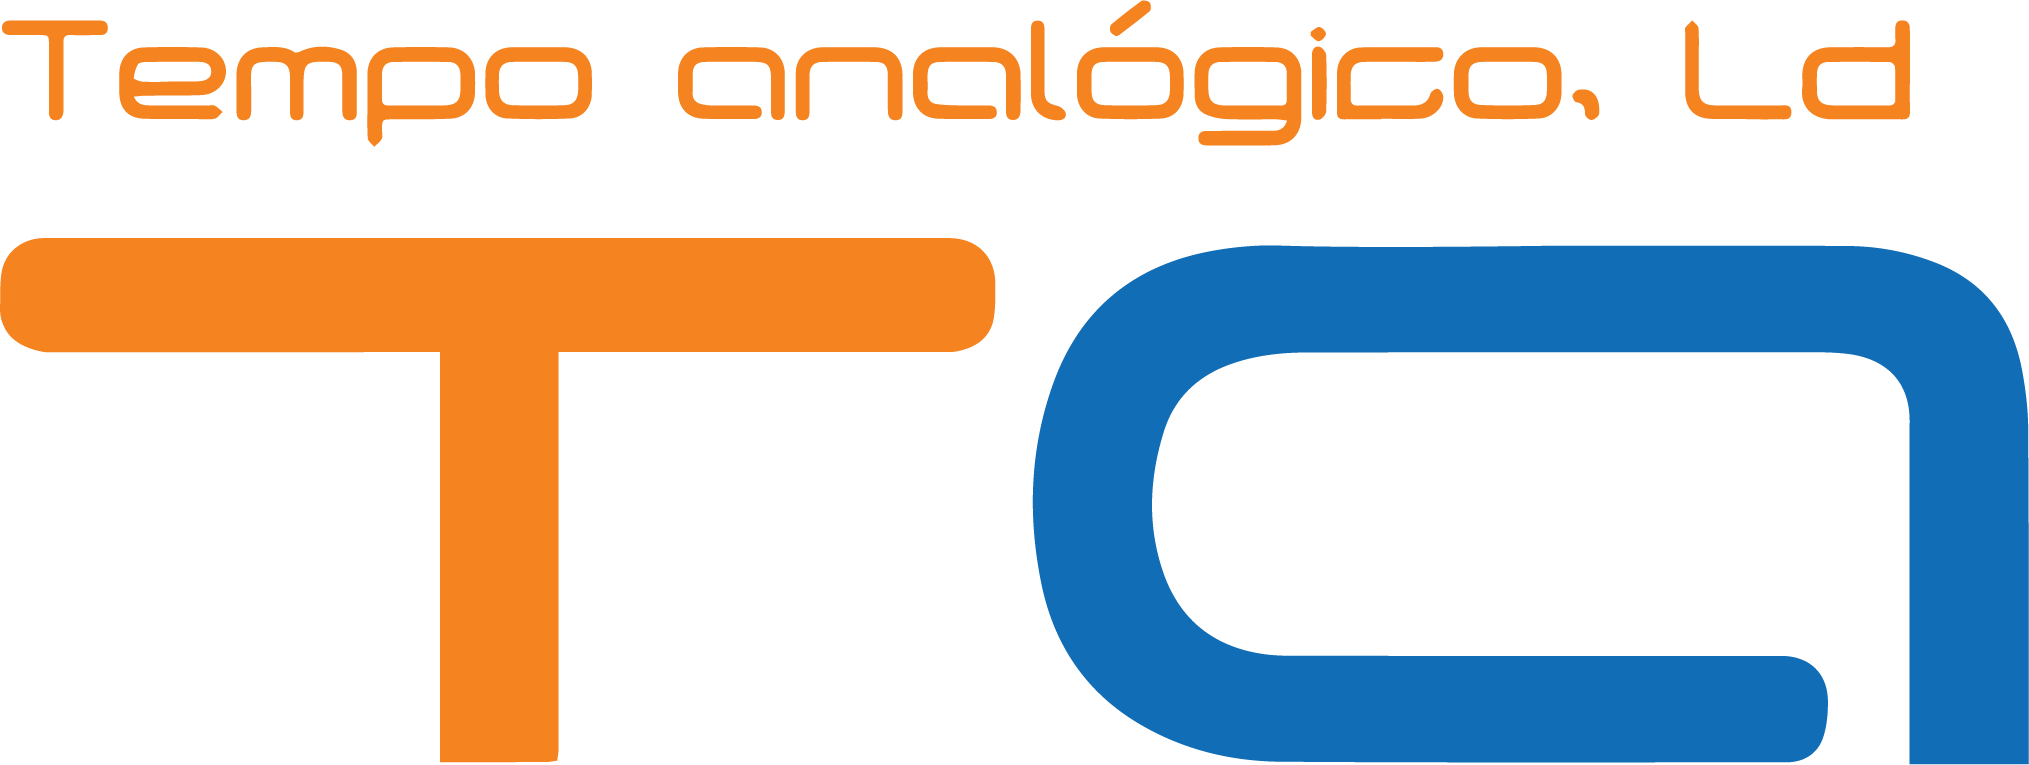 Logotipo Tempo Analógico